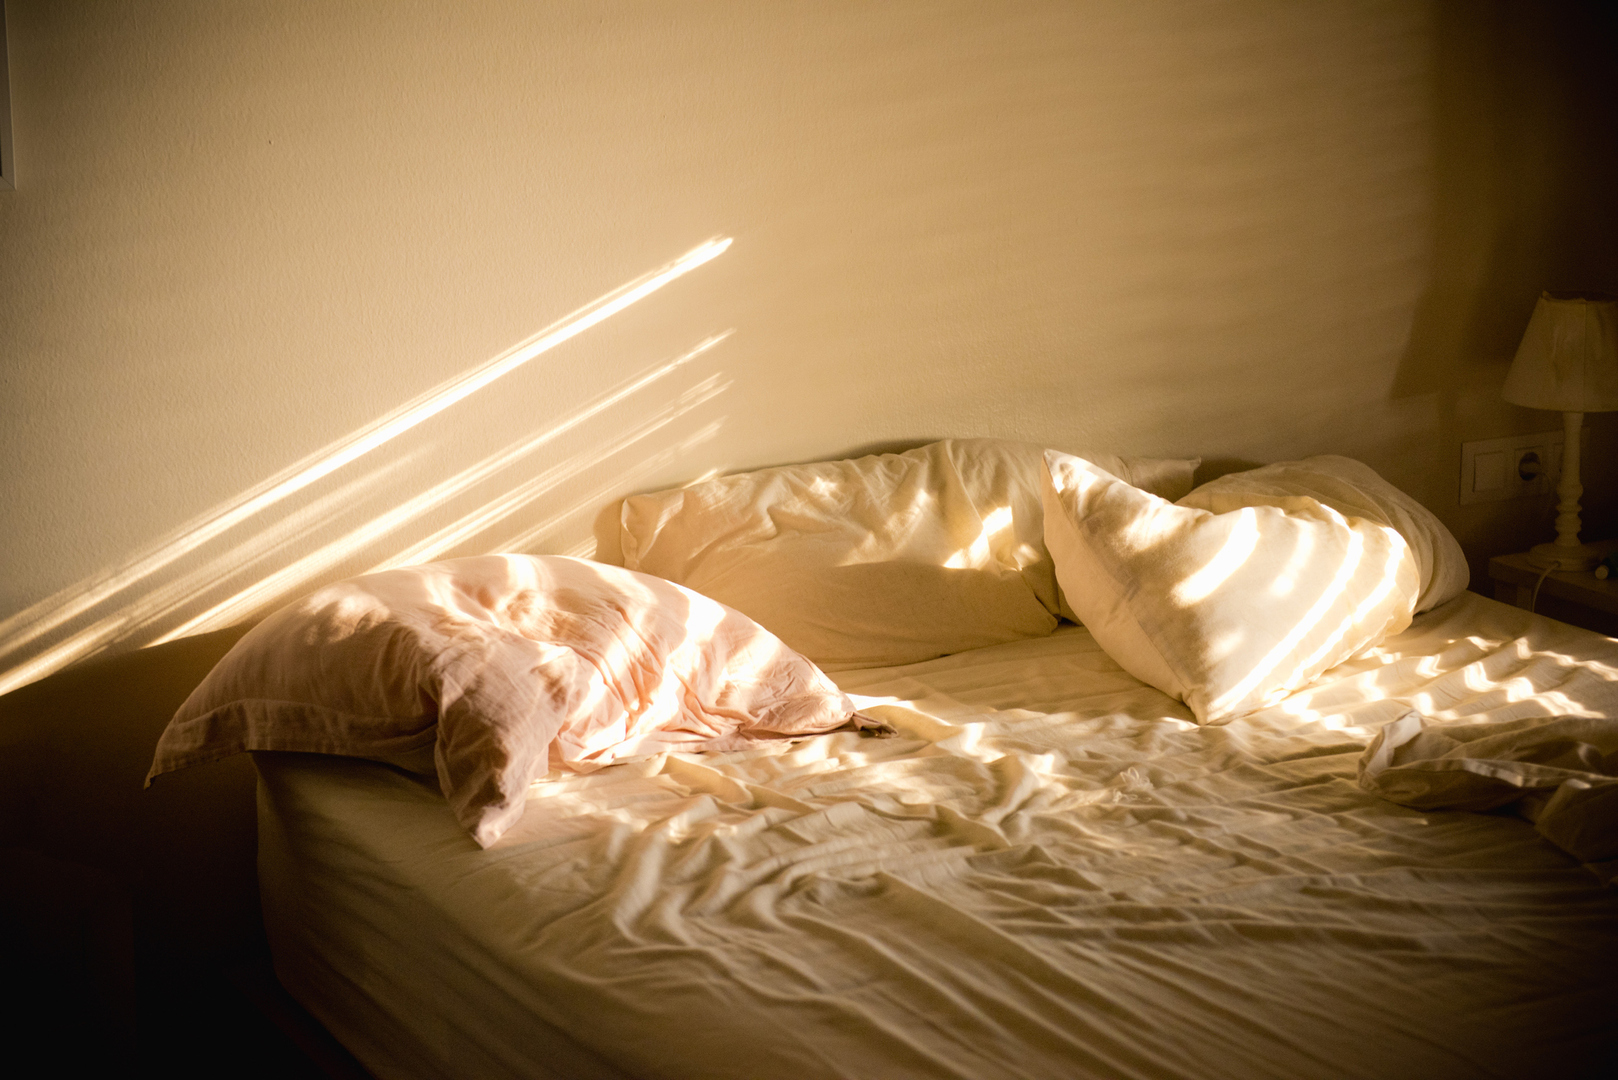 دراسة تكشف كيفية تأثير نافذة غرفة النوم على نوعية النوم وأداء العمل في اليوم التالي